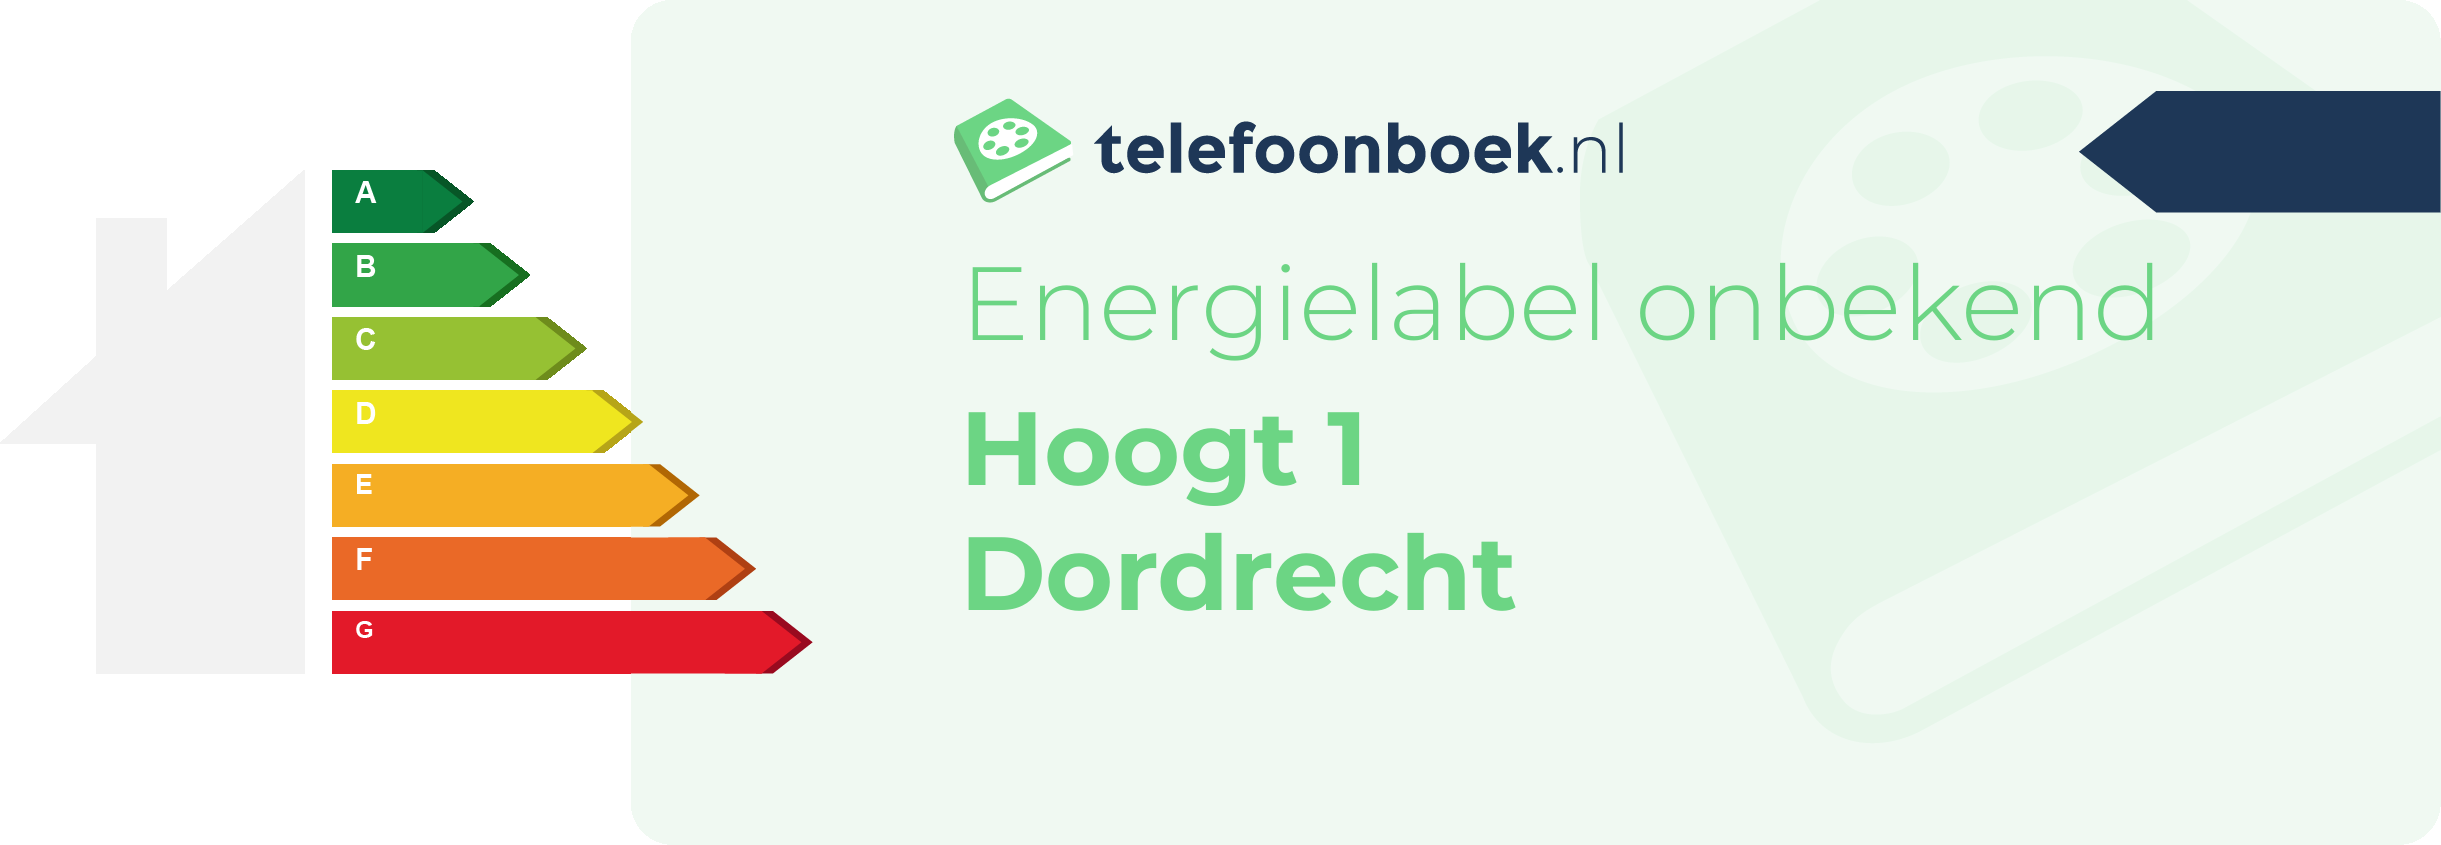 Energielabel Hoogt 1 Dordrecht